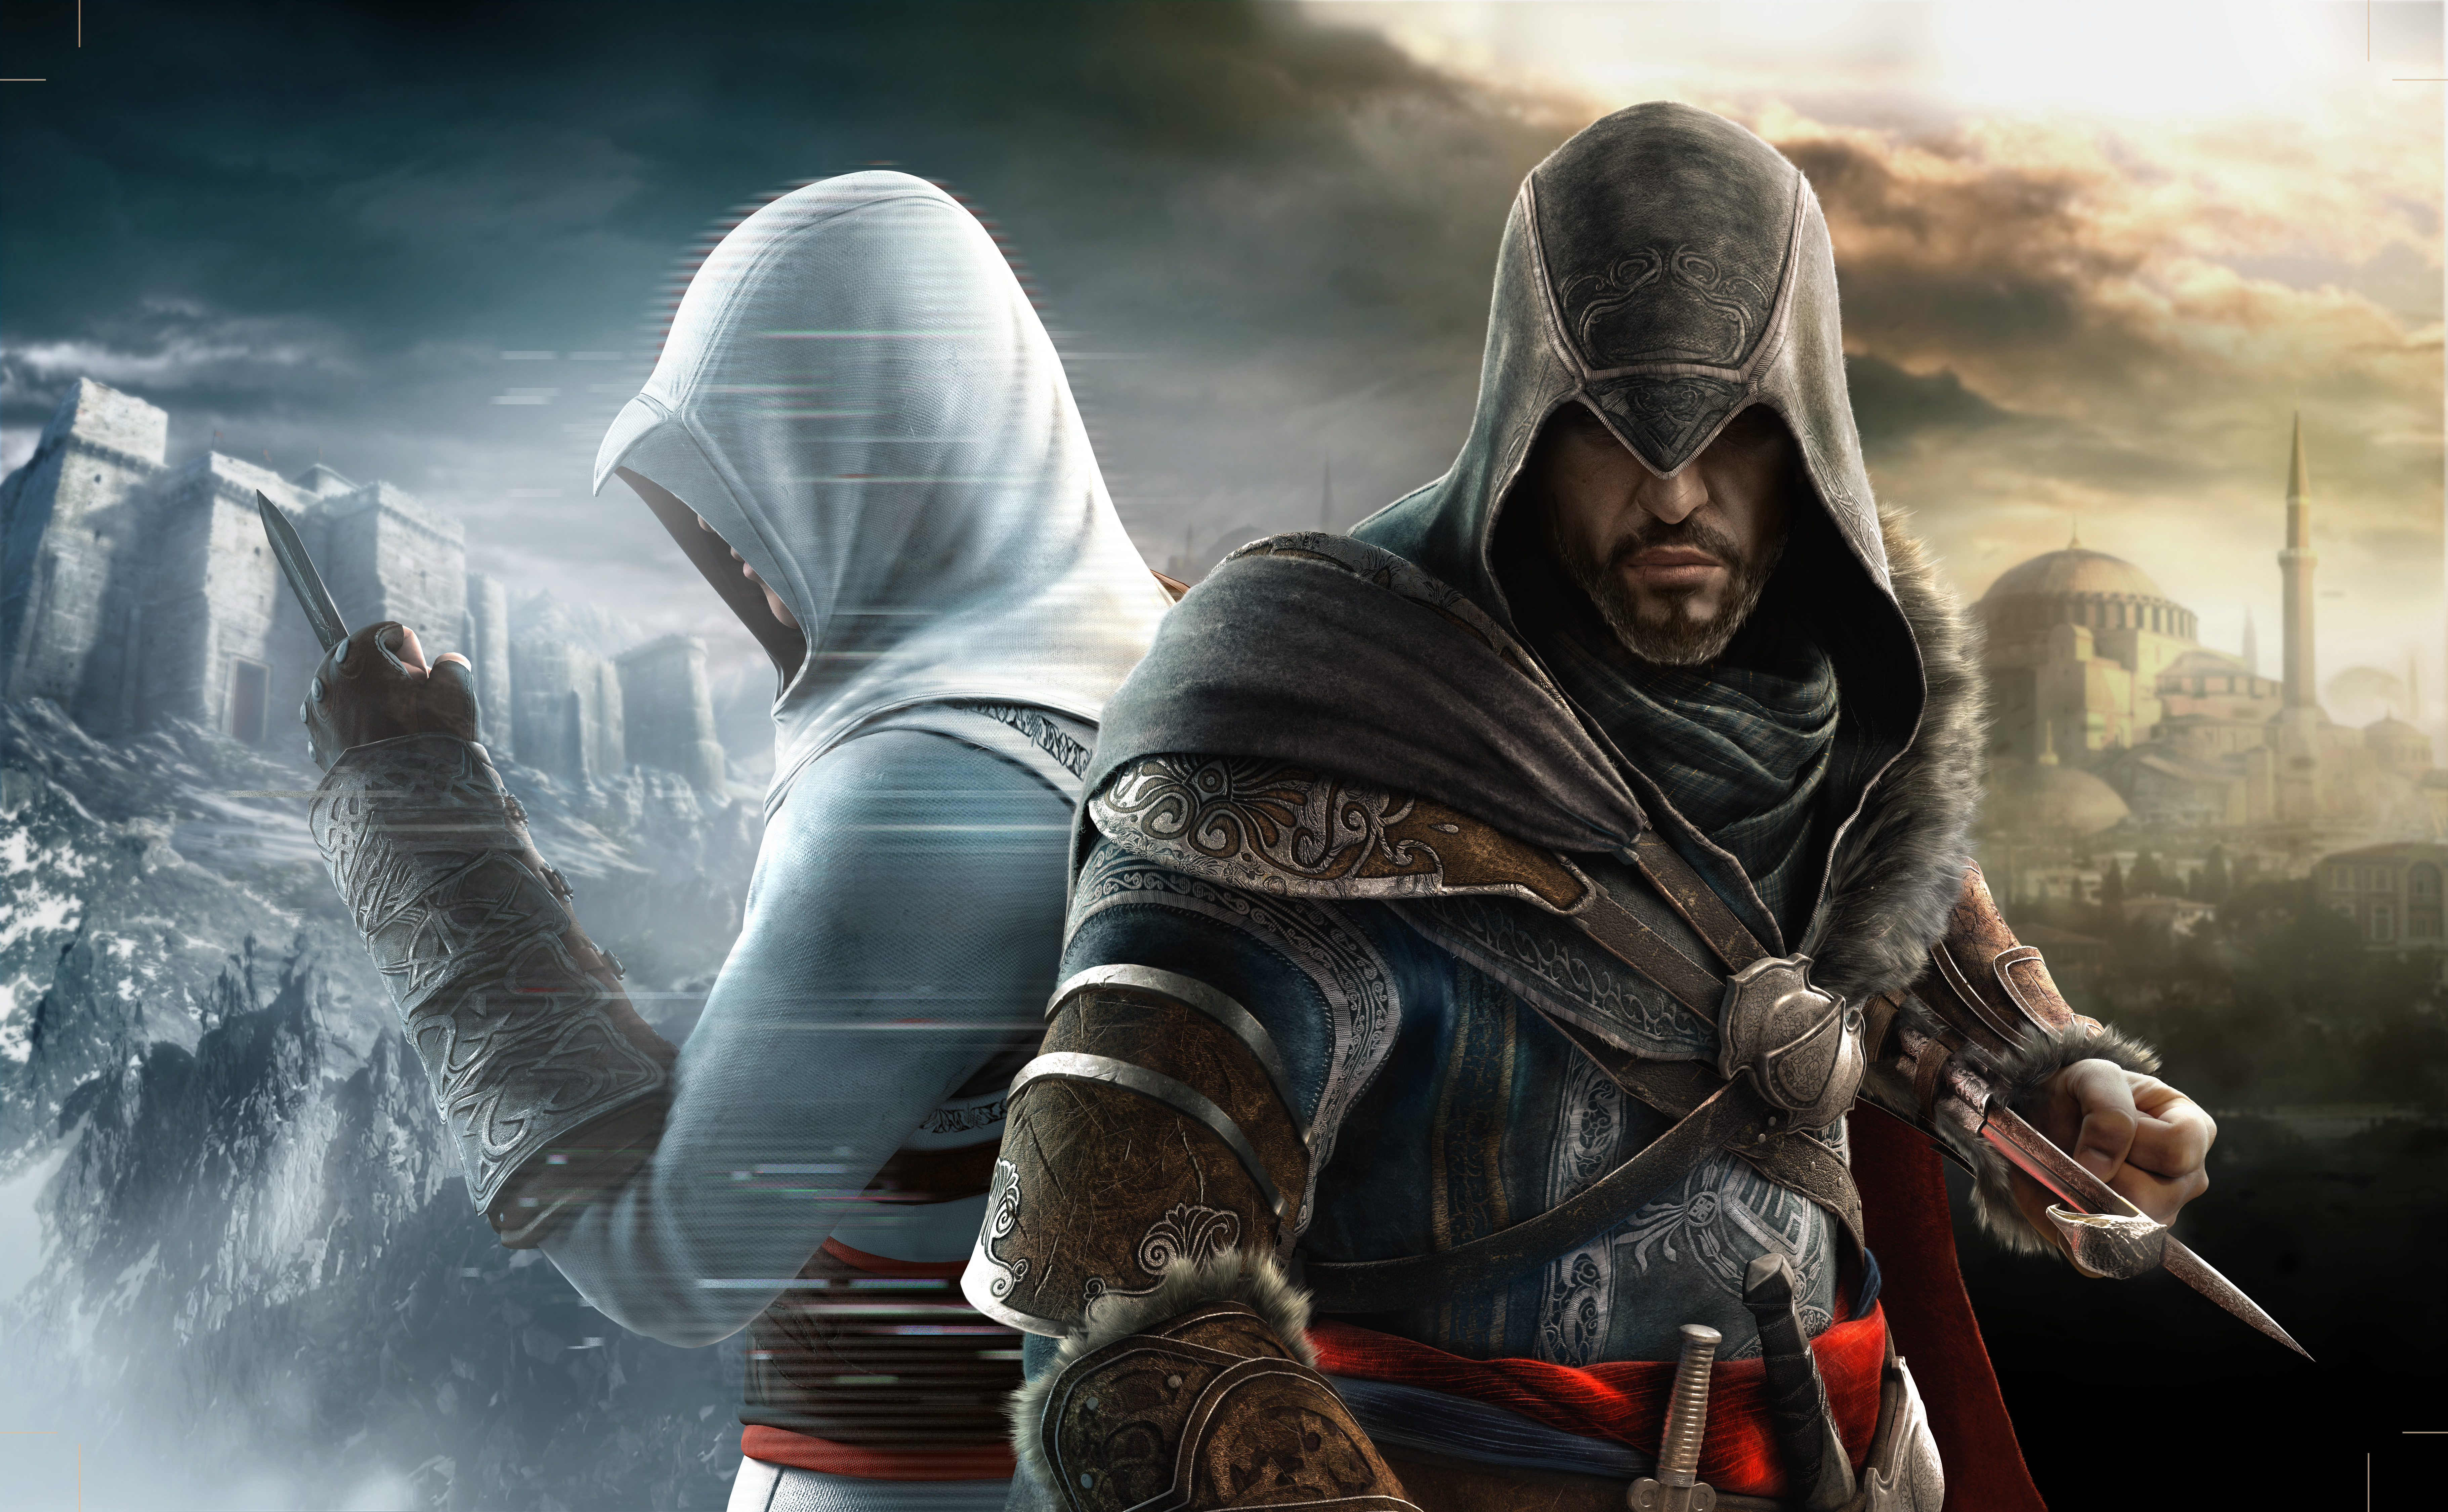 Melhores papéis de parede de Assassin's Creed: Revelações para tela do telefone